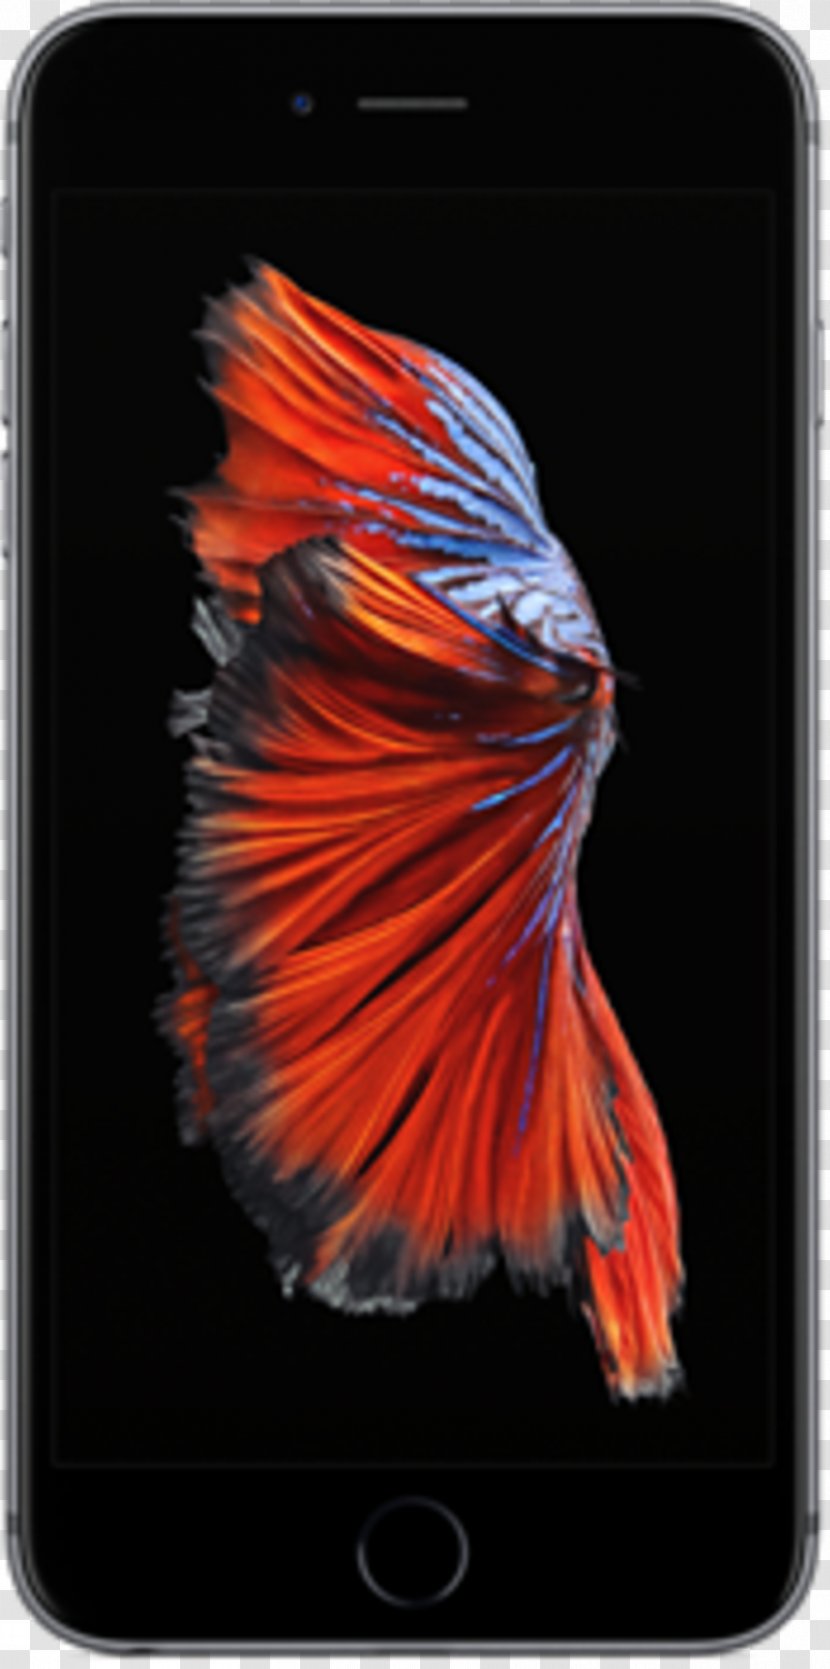 IPhone 5 6 Plus 6s 7 8 - Iphone - Betta Transparent PNG